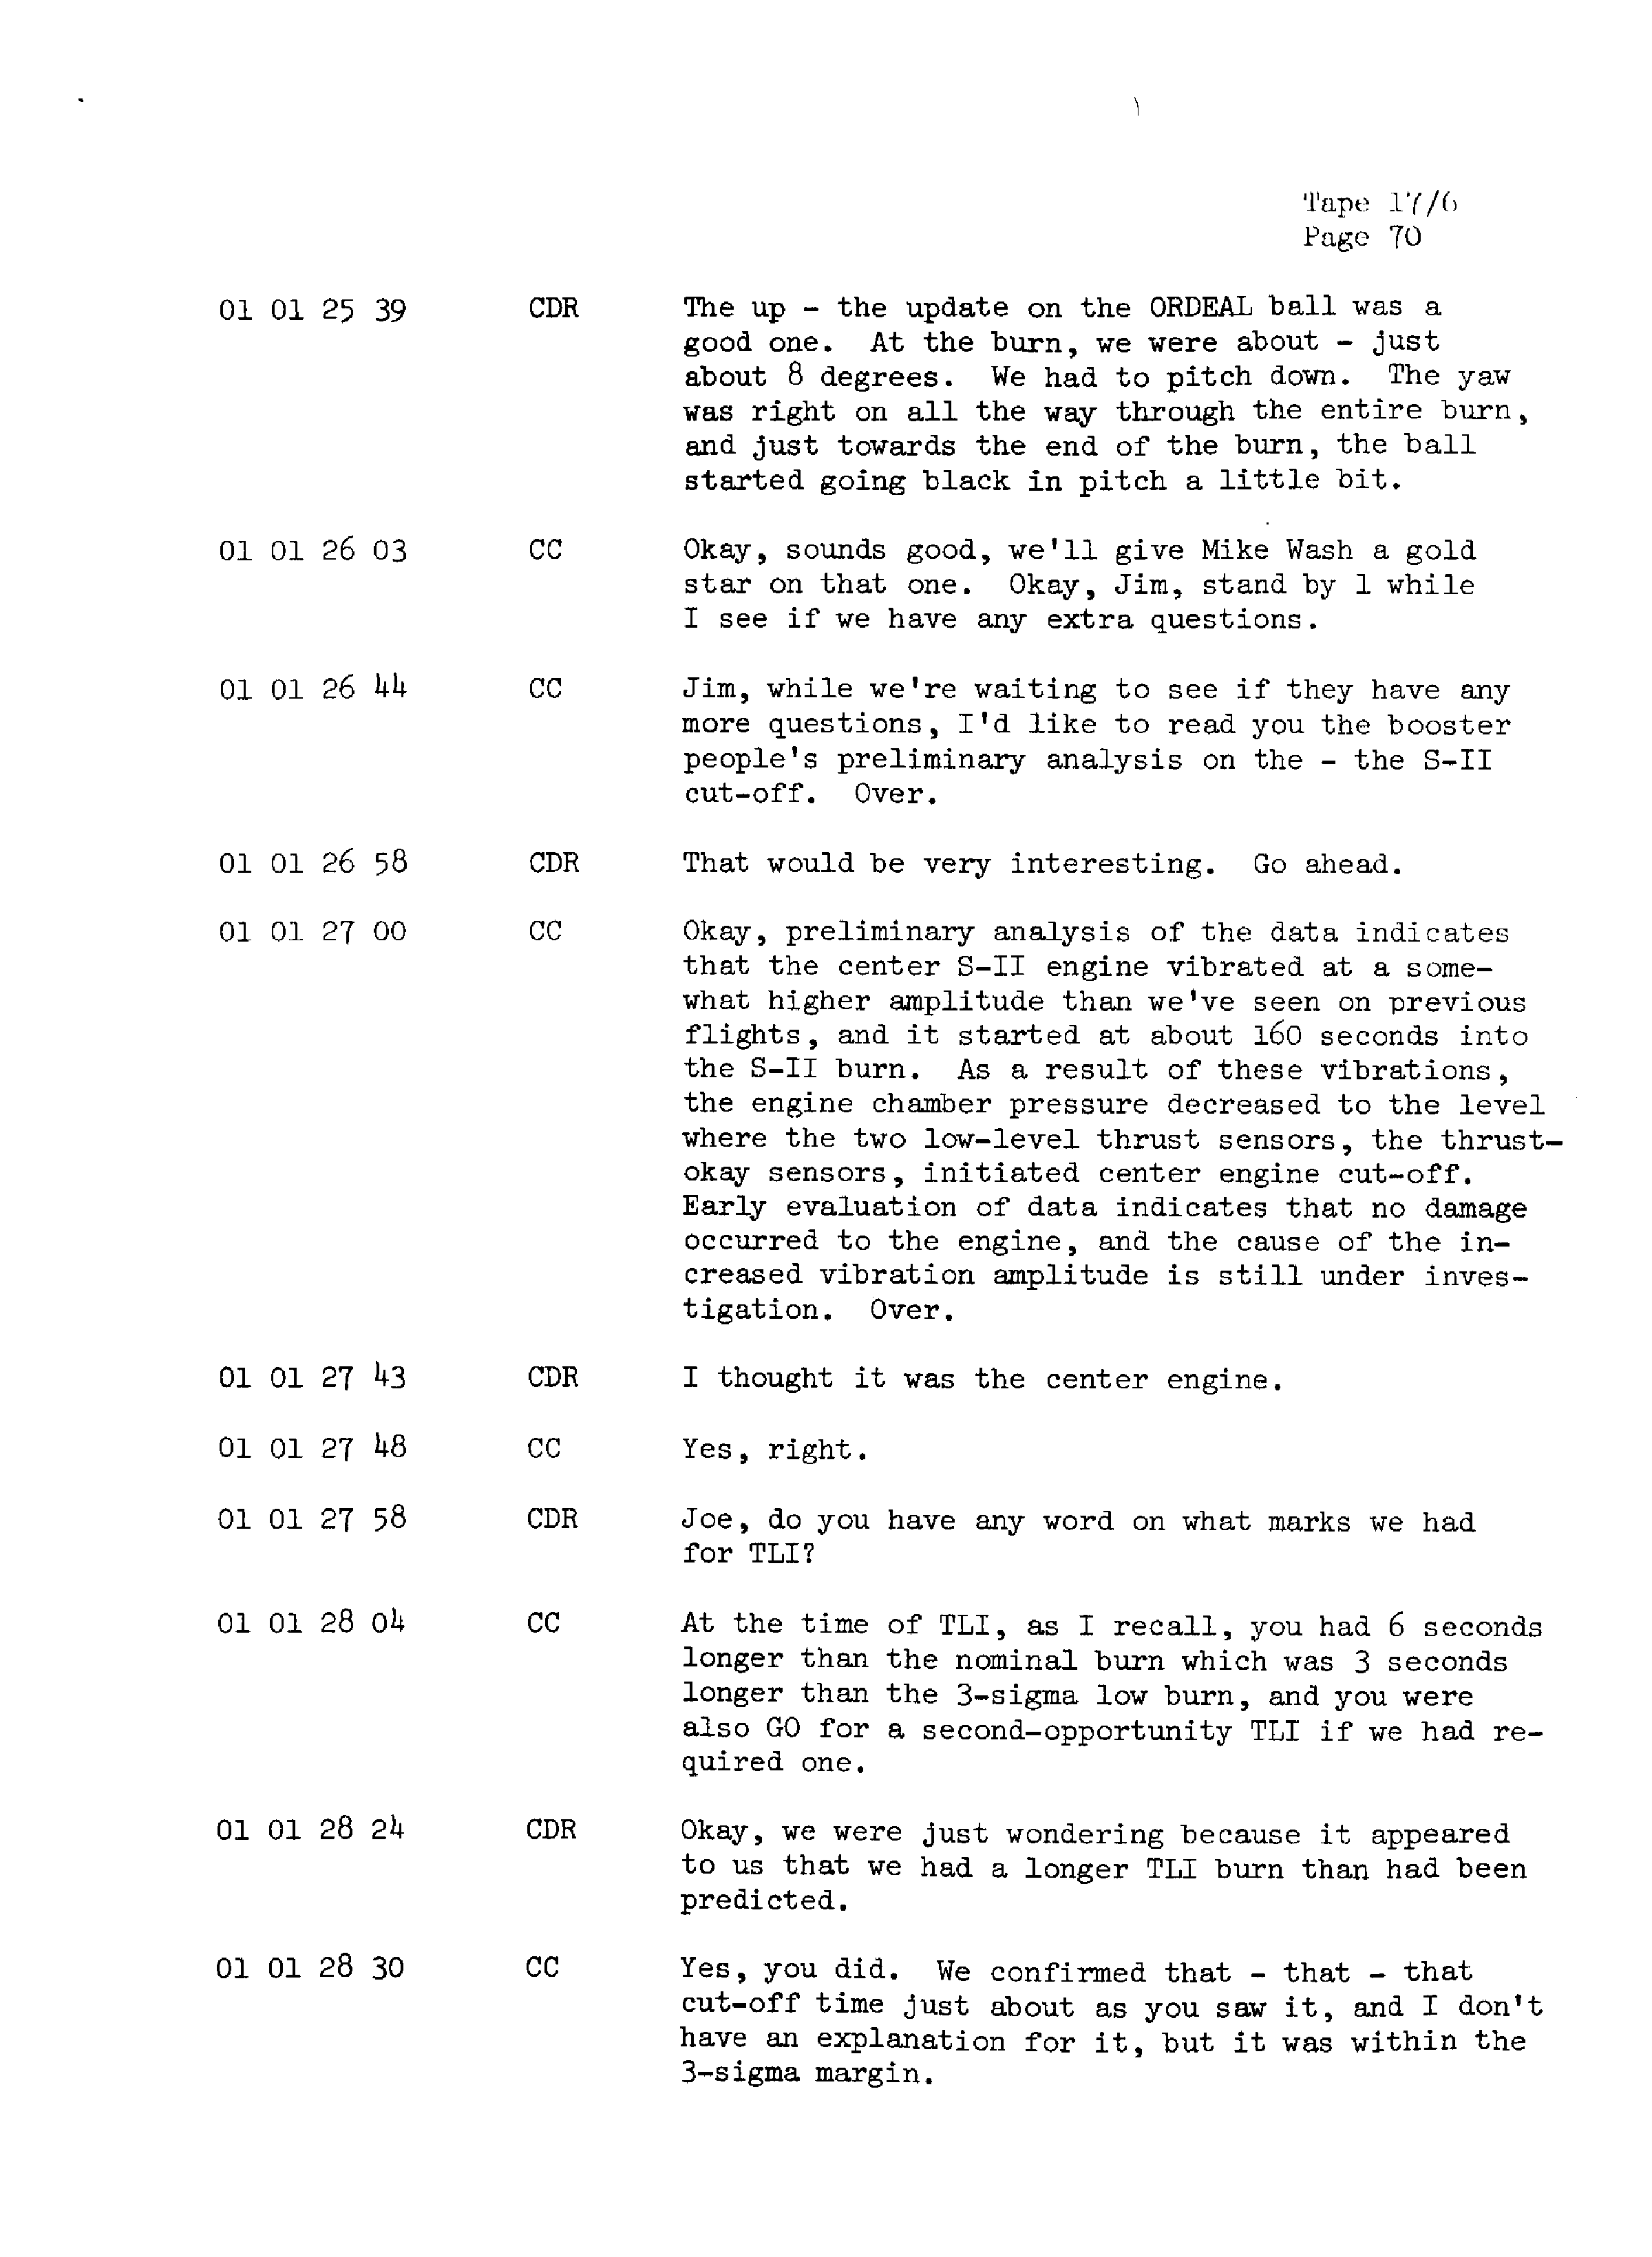 Page 77 of Apollo 13’s original transcript